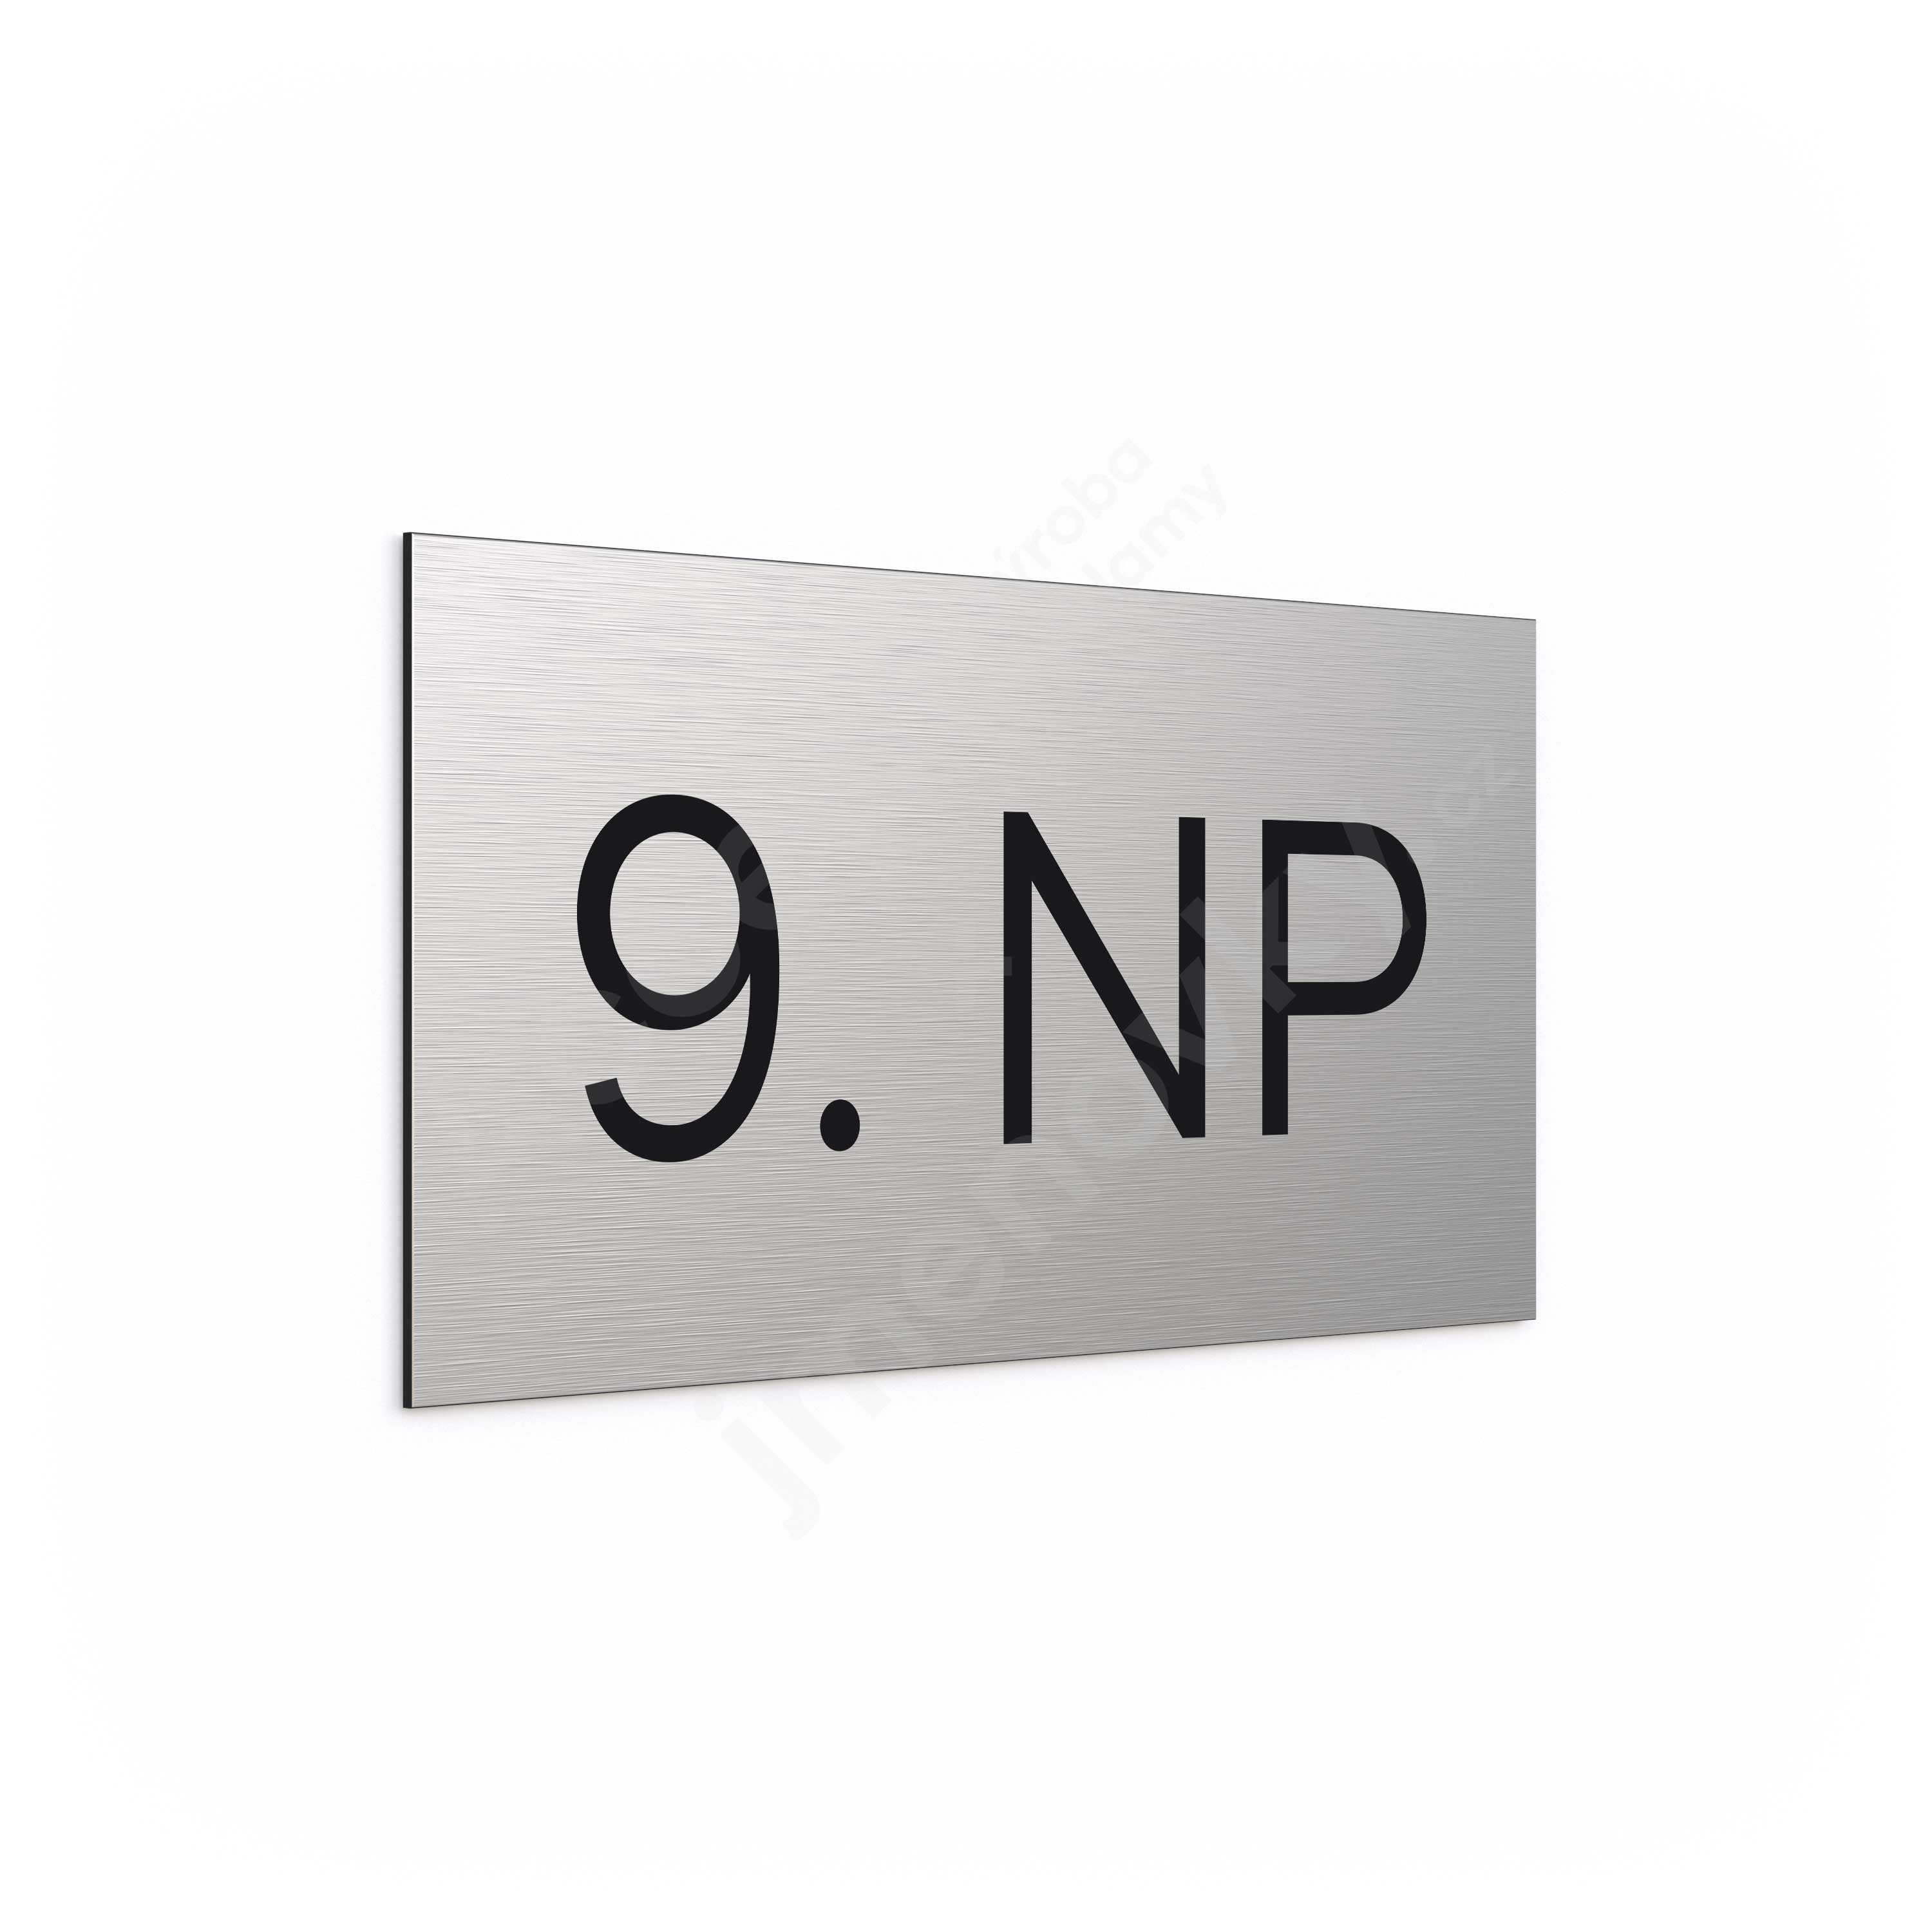 Oznaen podla "9. NP" - stbrn tabulka - ern popis